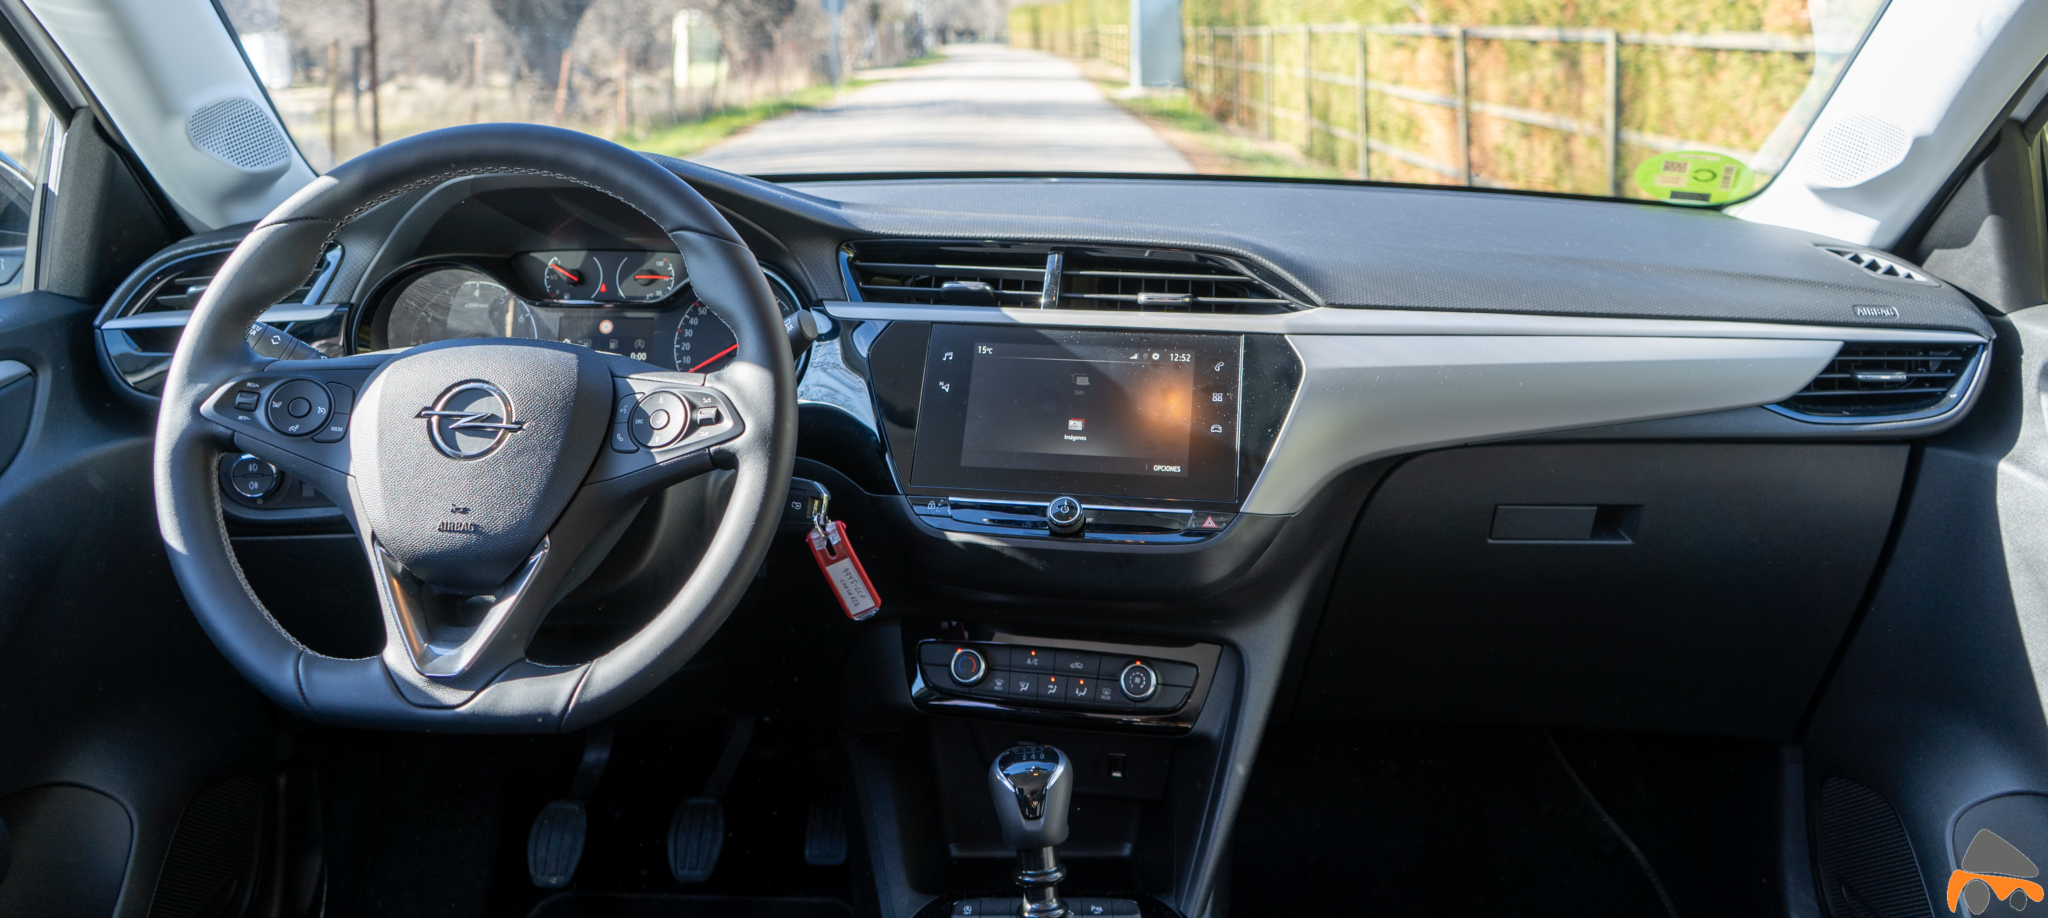 Salpicadero vista frontal Opel Corsa Edition 2020 - Opel Corsa 2020: Un utilitario para tenerlo muy en cuenta